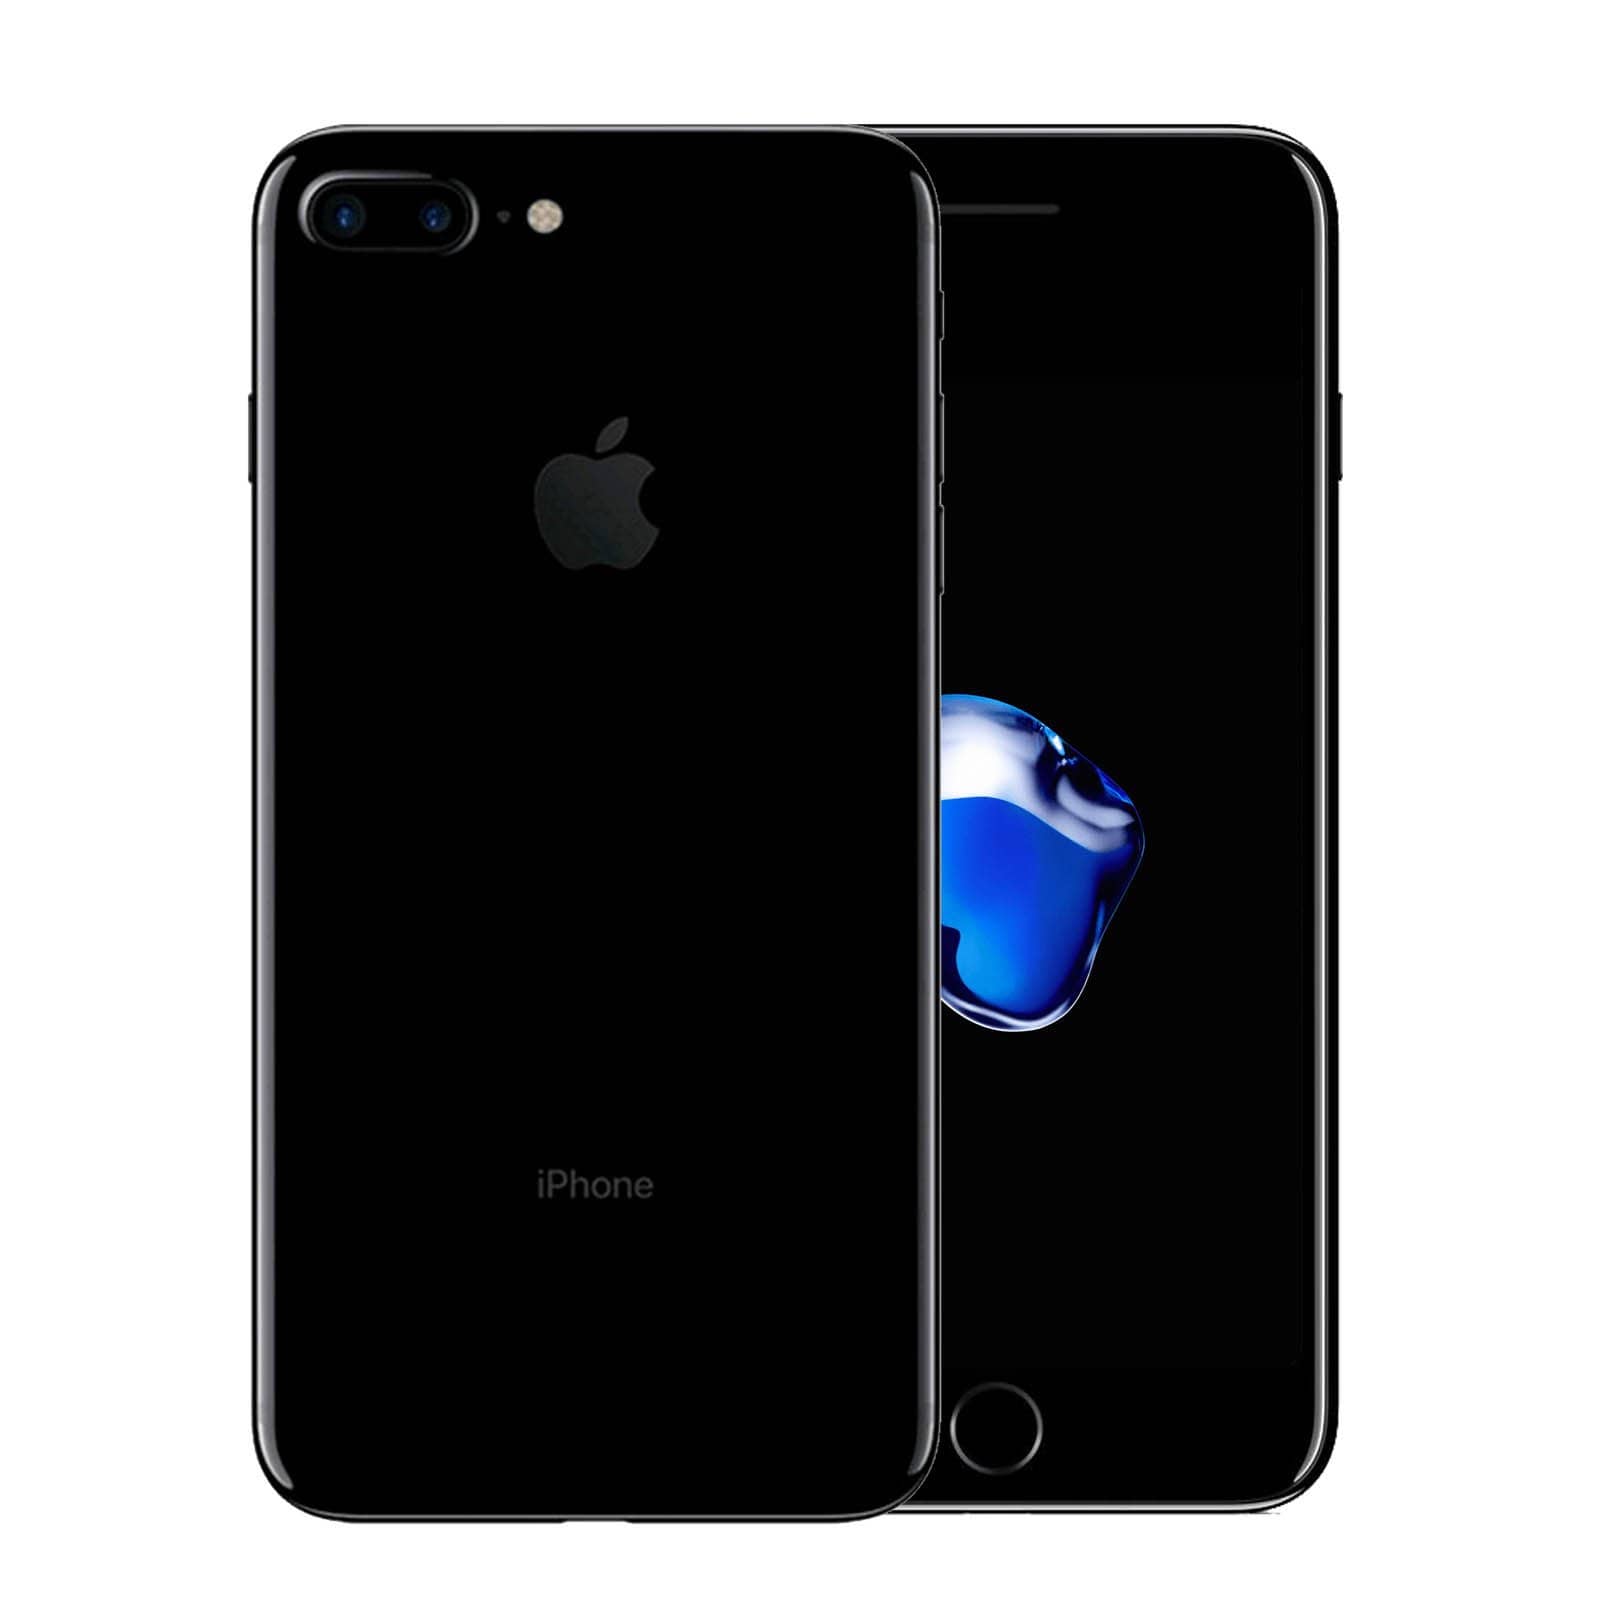 Apple iPhone 7 Plus 128GB Jet Black Good - Unlocked 128GB Jet Black Good